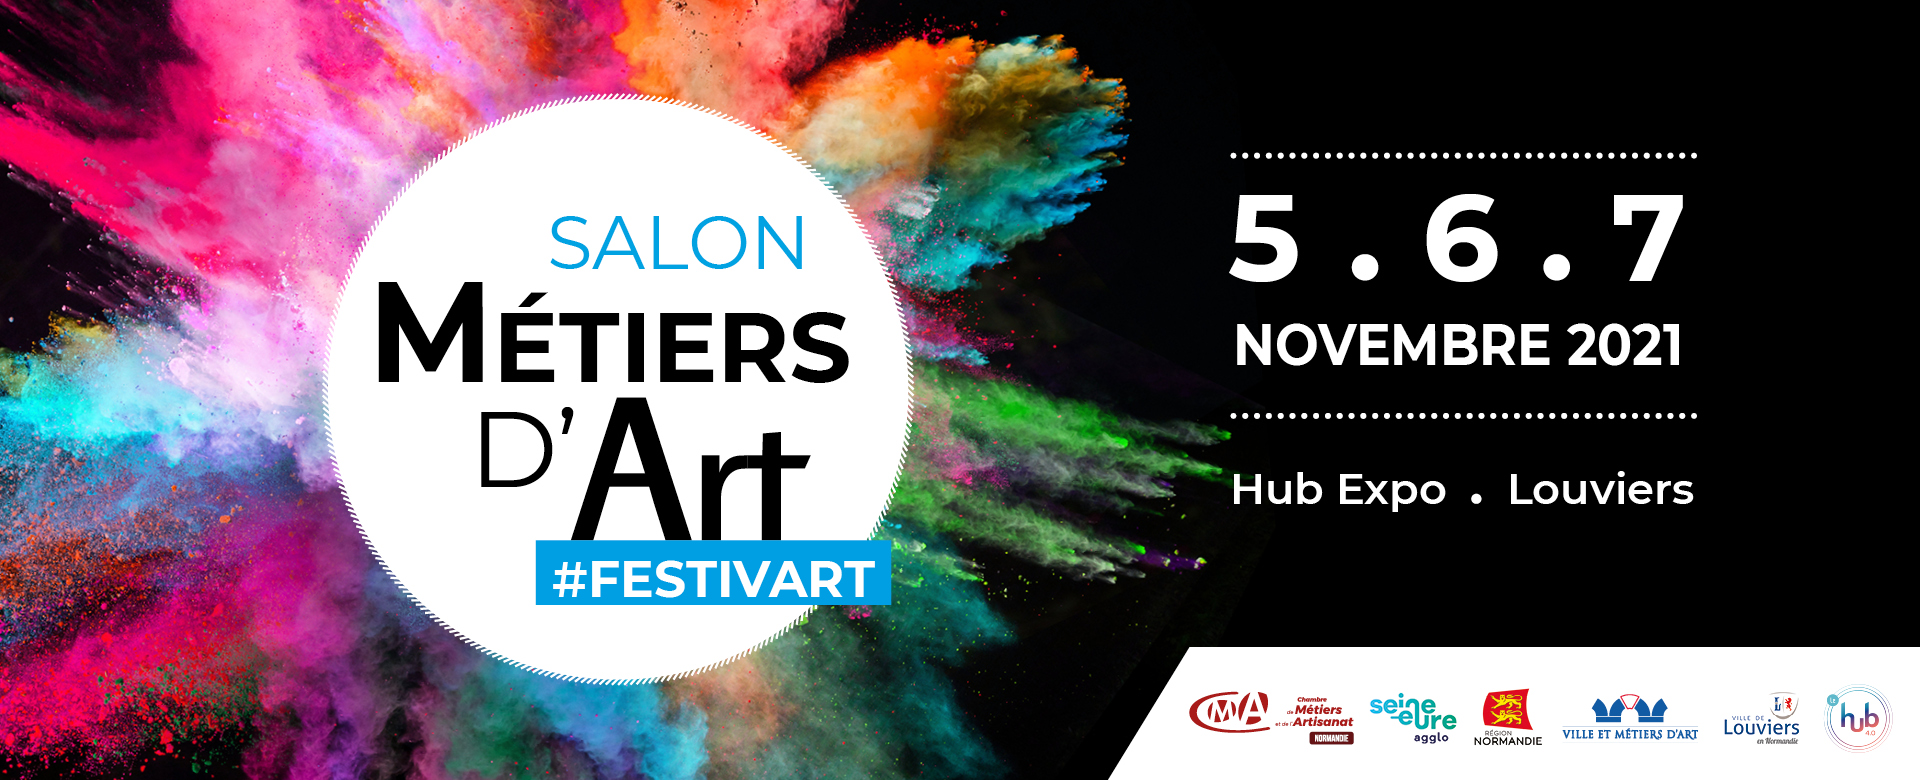 Rendez-vous en novembre pour Festiv’Art, le salon des Métiers d’Art !